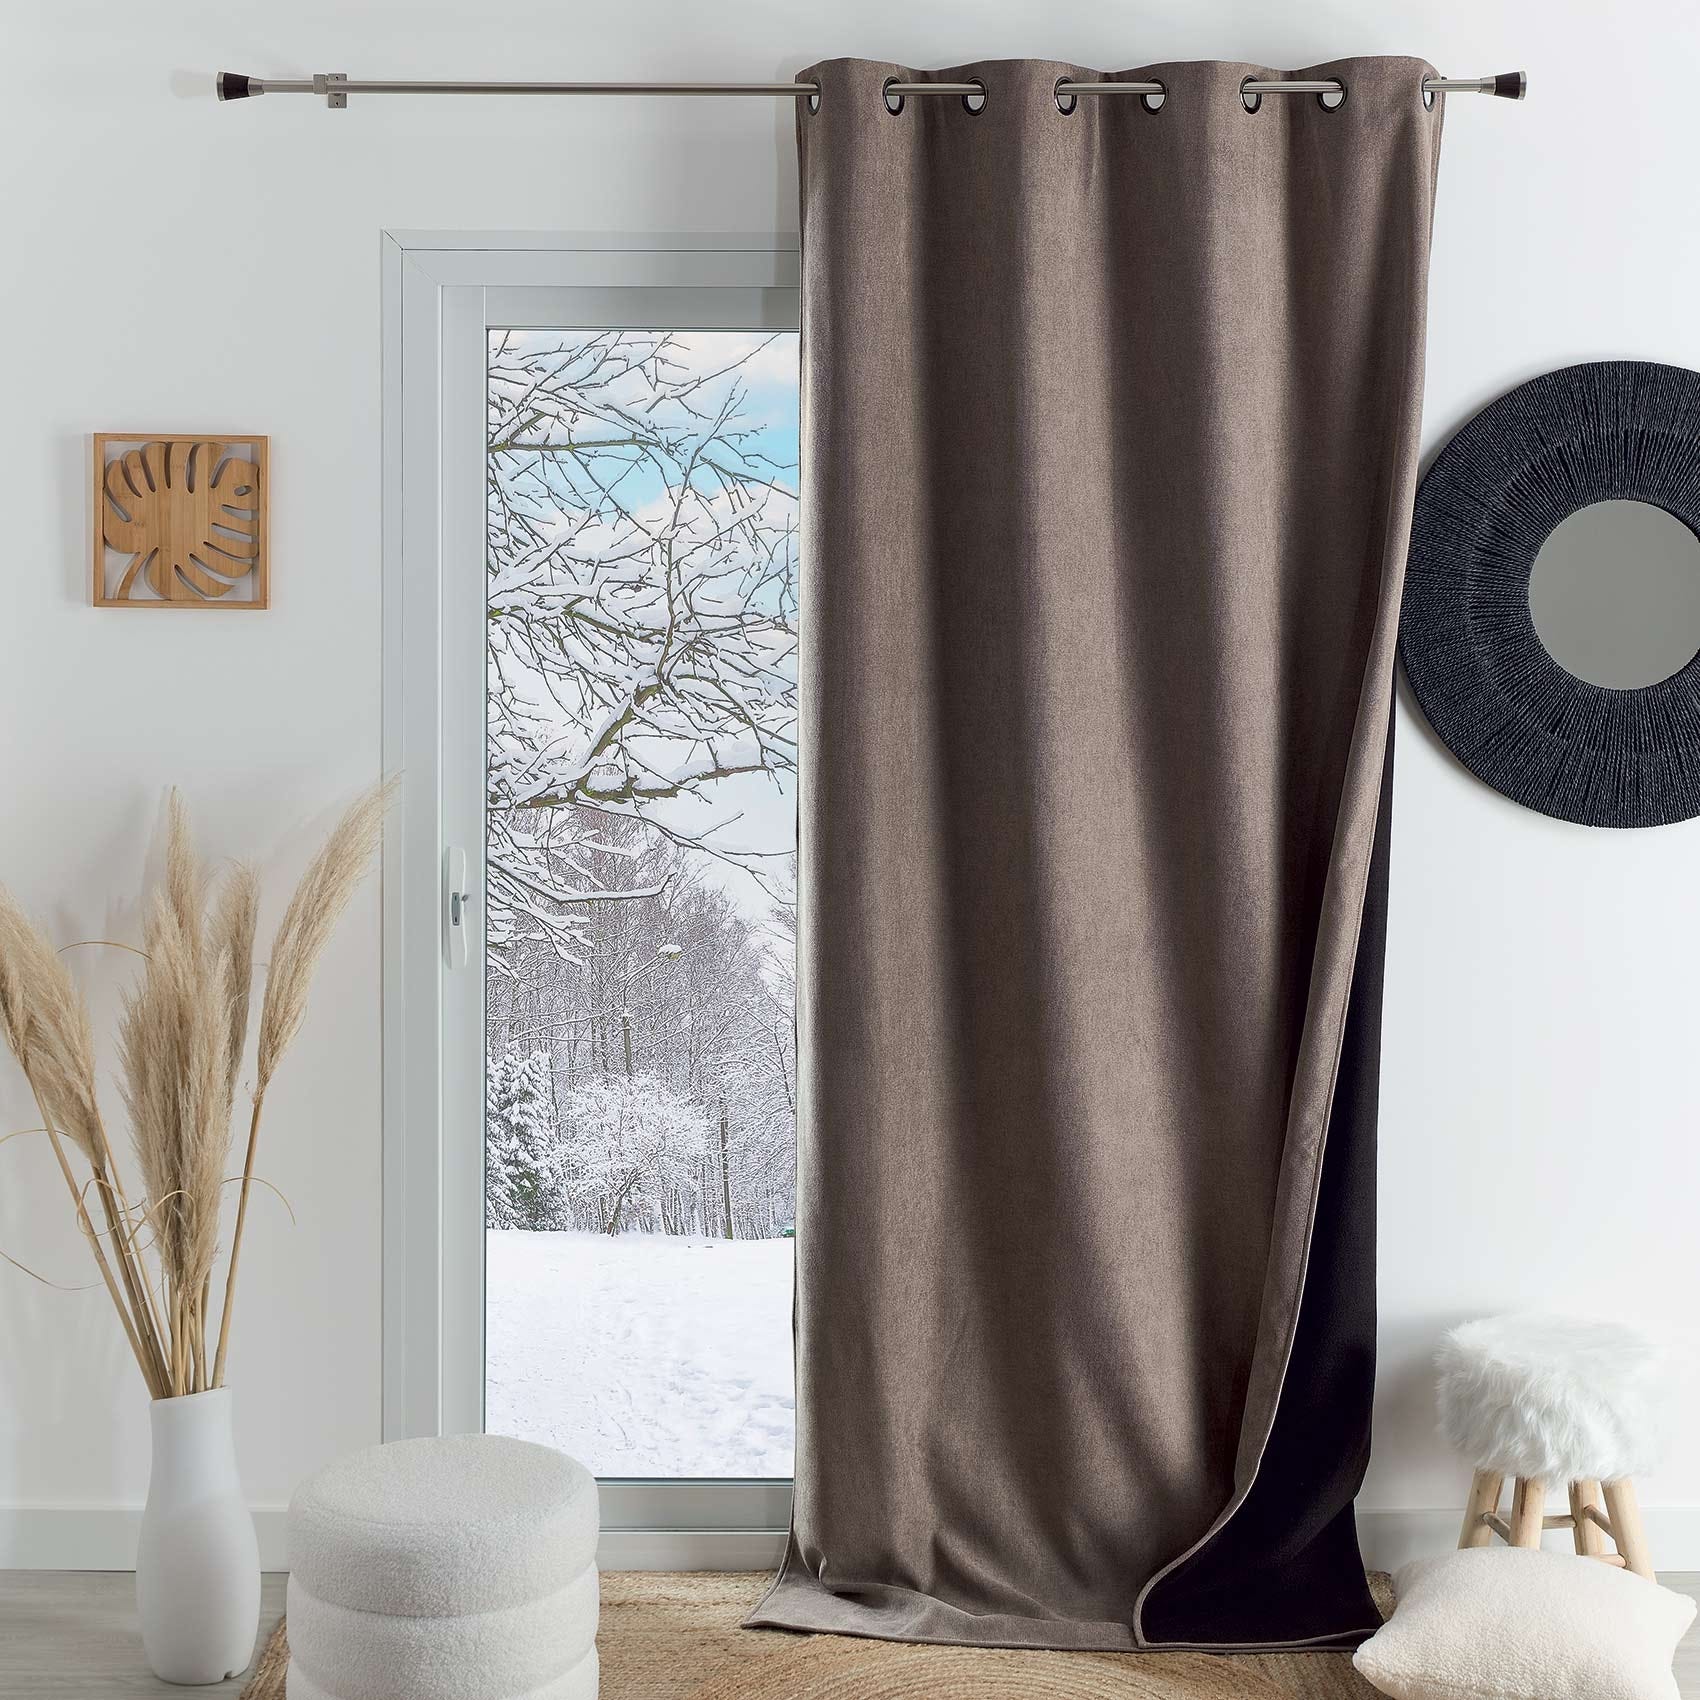 4 cortinas térmicas que te permitirán aislar tu hogar del frío y